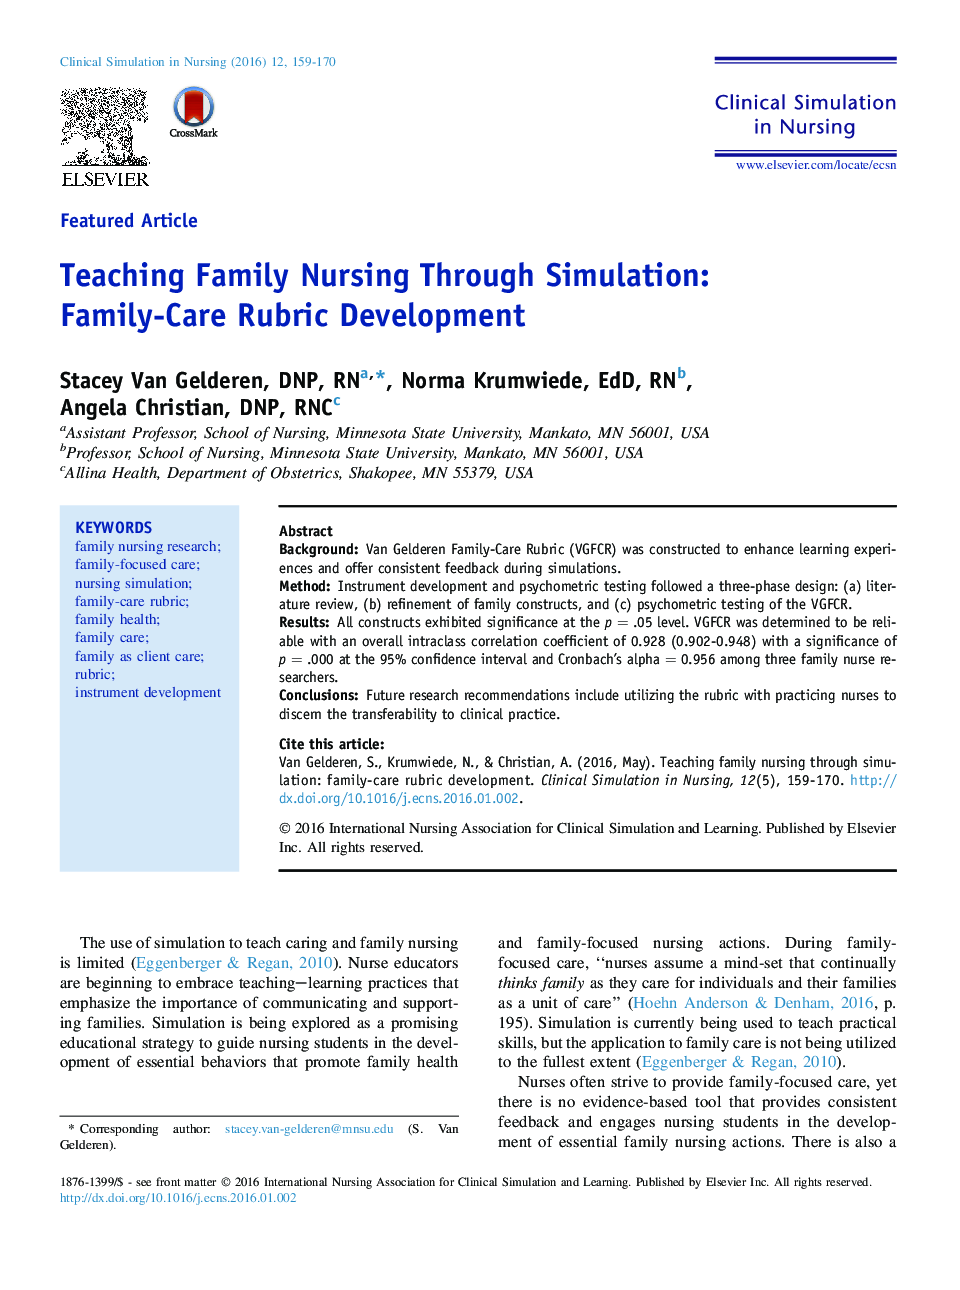 آموزش پرستاری خانواده از طریق شبیه سازی: توسعه بخش مراقبت از خانواده